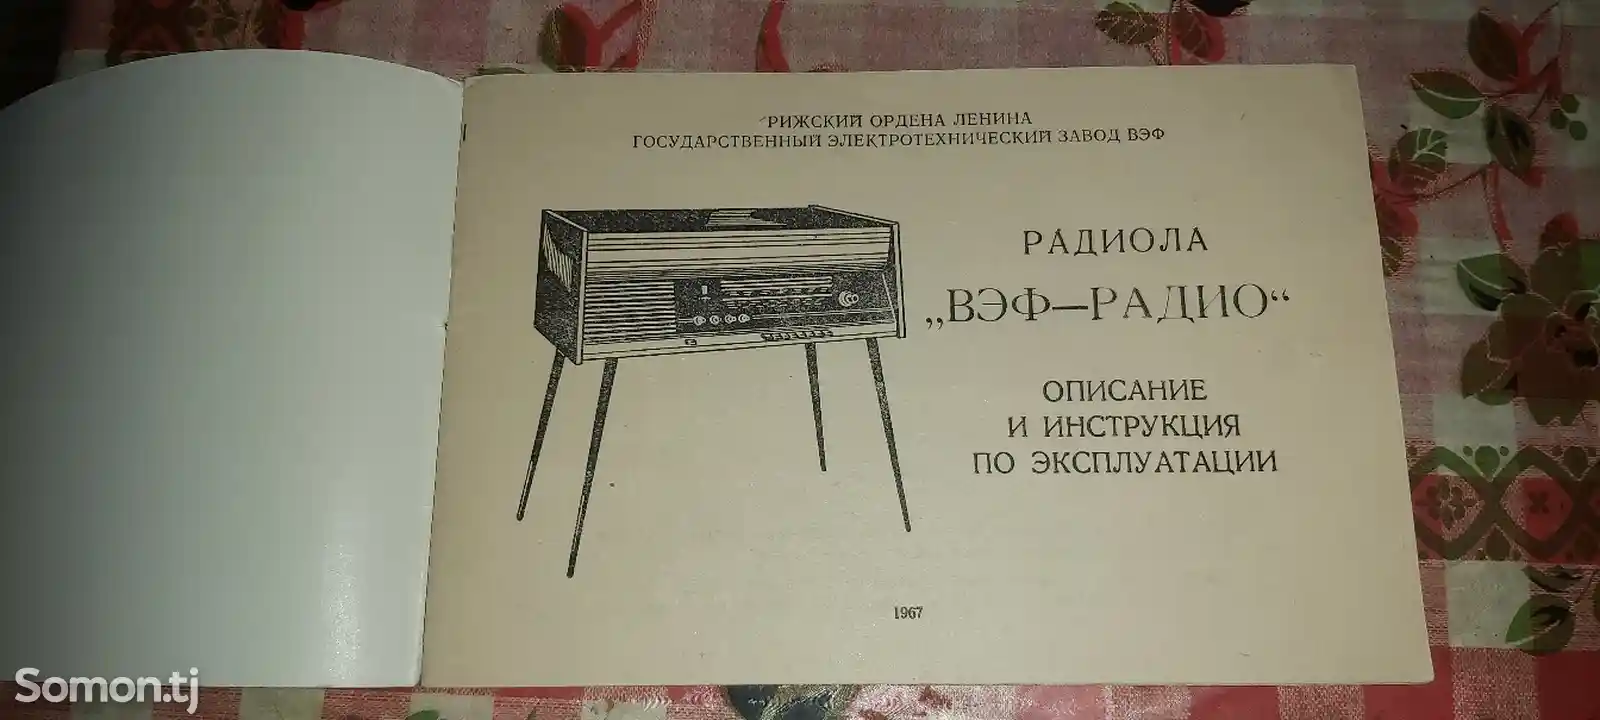 Радиола Вэф-радио-2